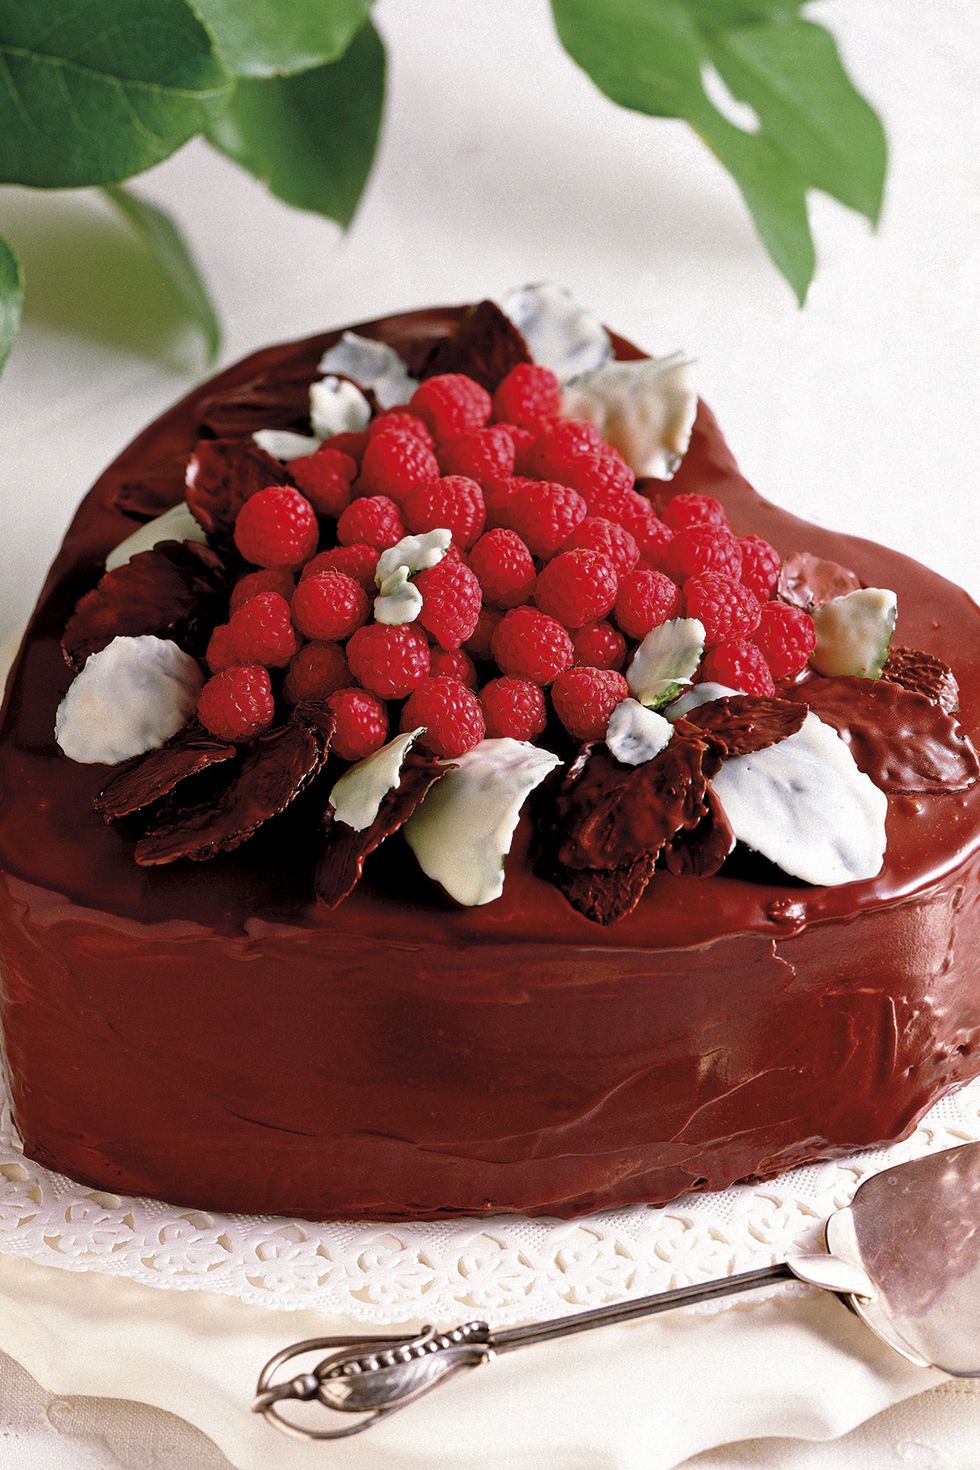 Tarta de chocolate de cumpleaños — Miss Gourmand